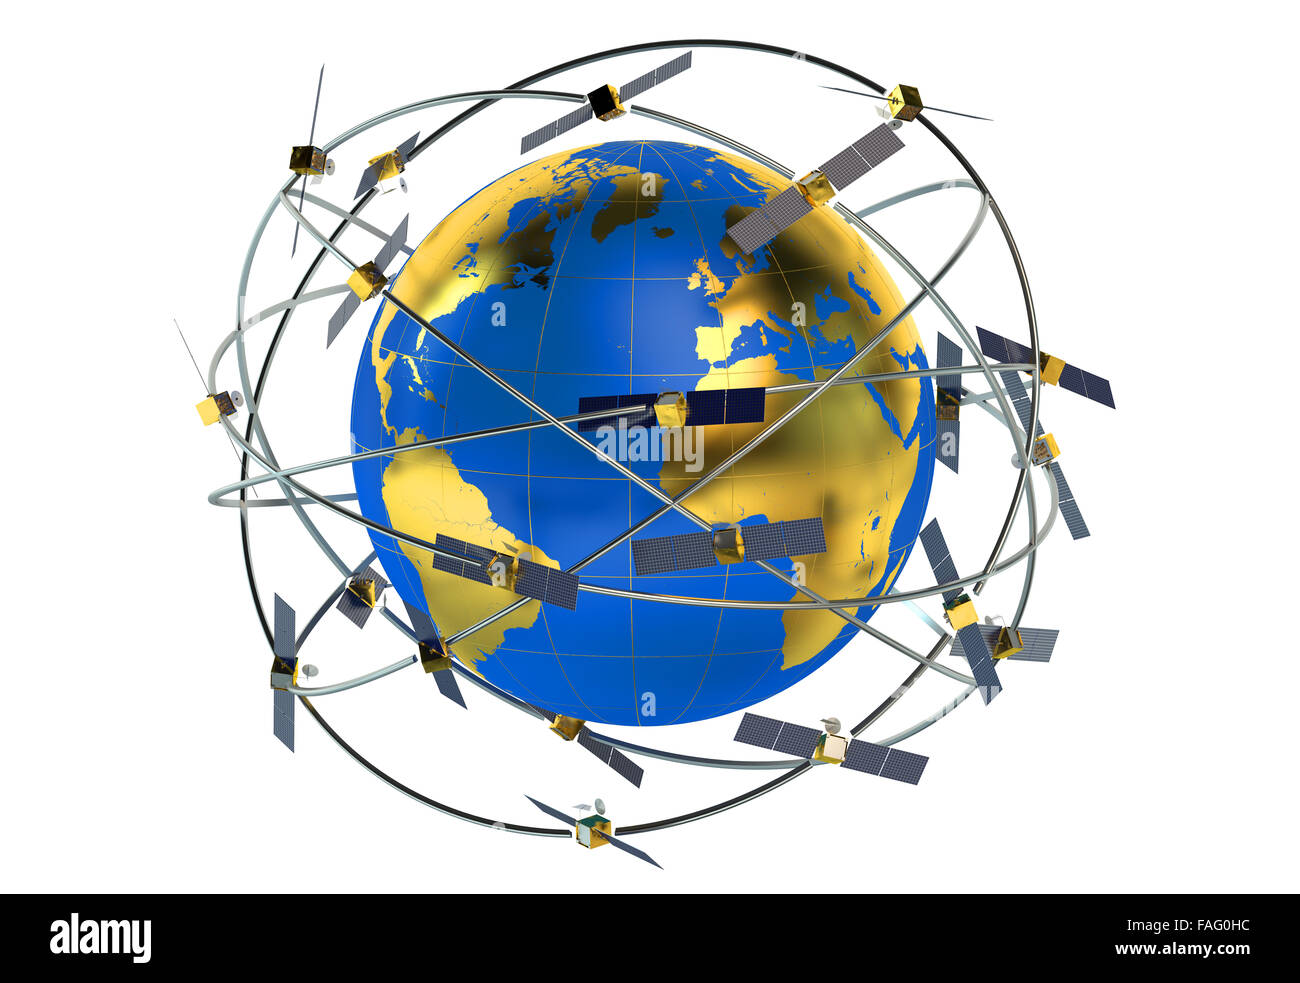 Weltraumsatelliten in exzentrischen Umlaufbahnen um die Erde Stockfoto